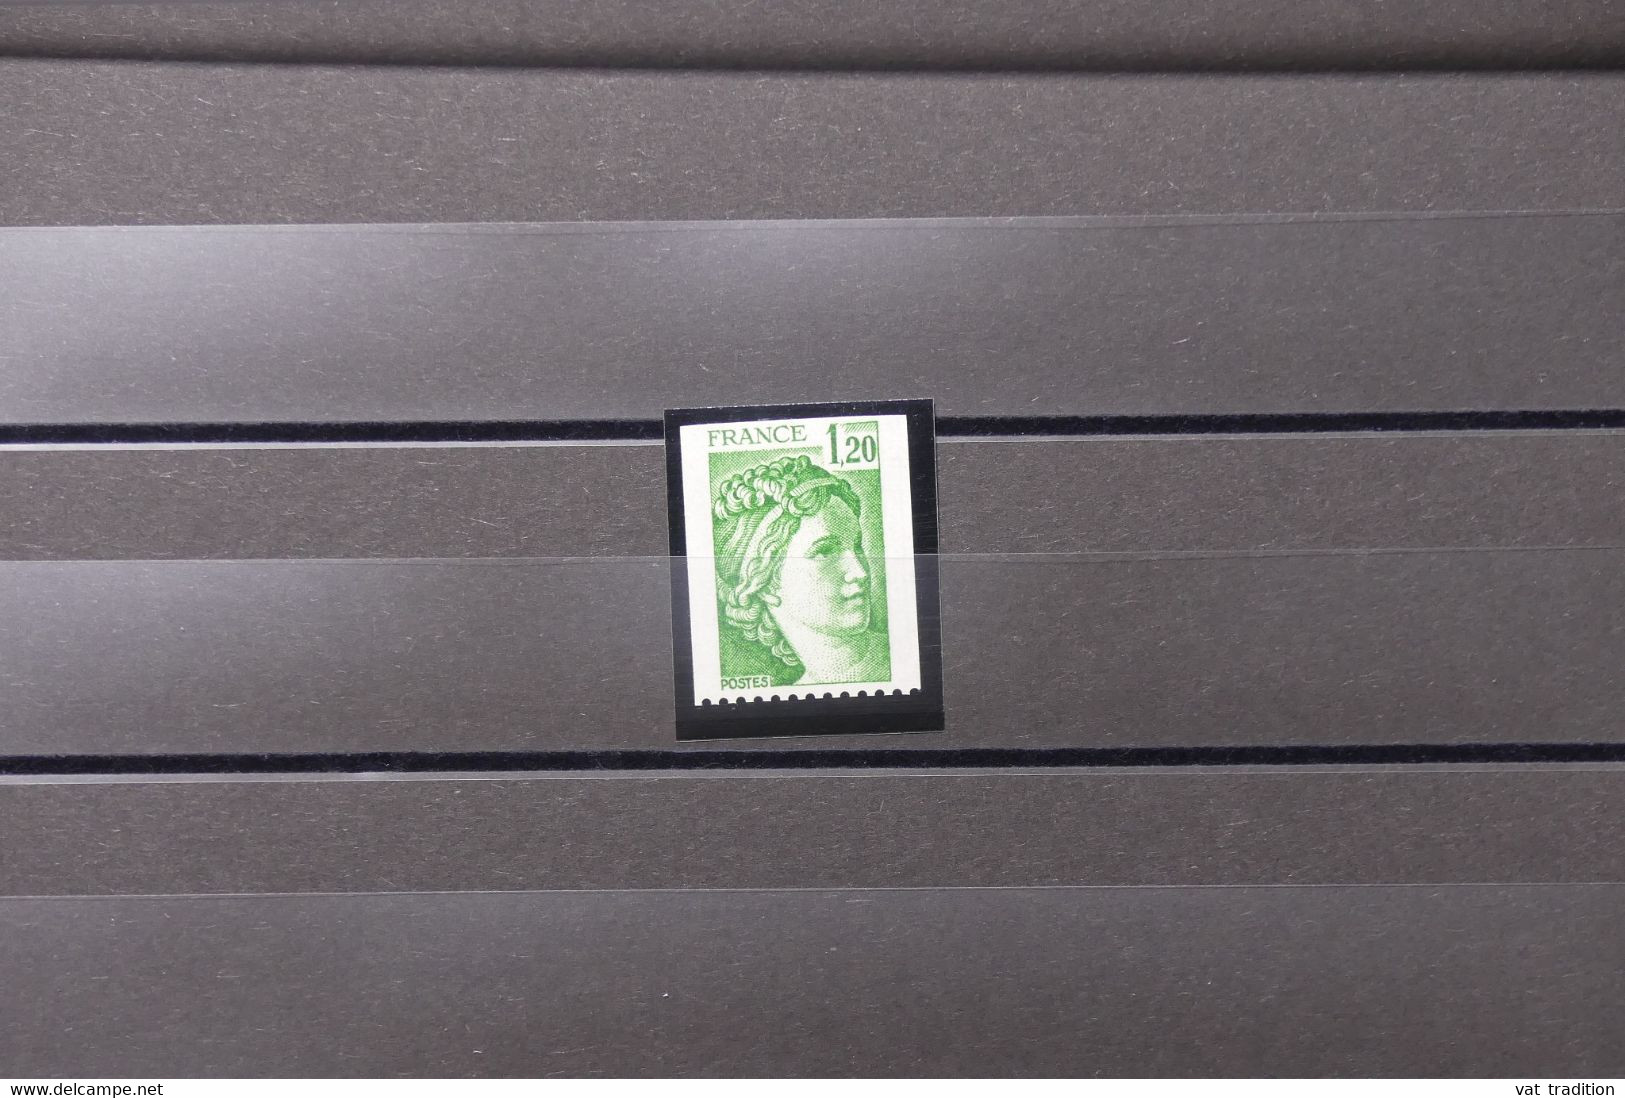 FRANCE - Type Sabine ( 2103 ) De Roulette Avec Découpe En Haut ( Non Dentelé Sur 3 Cotés)  - L 88777 - Unused Stamps